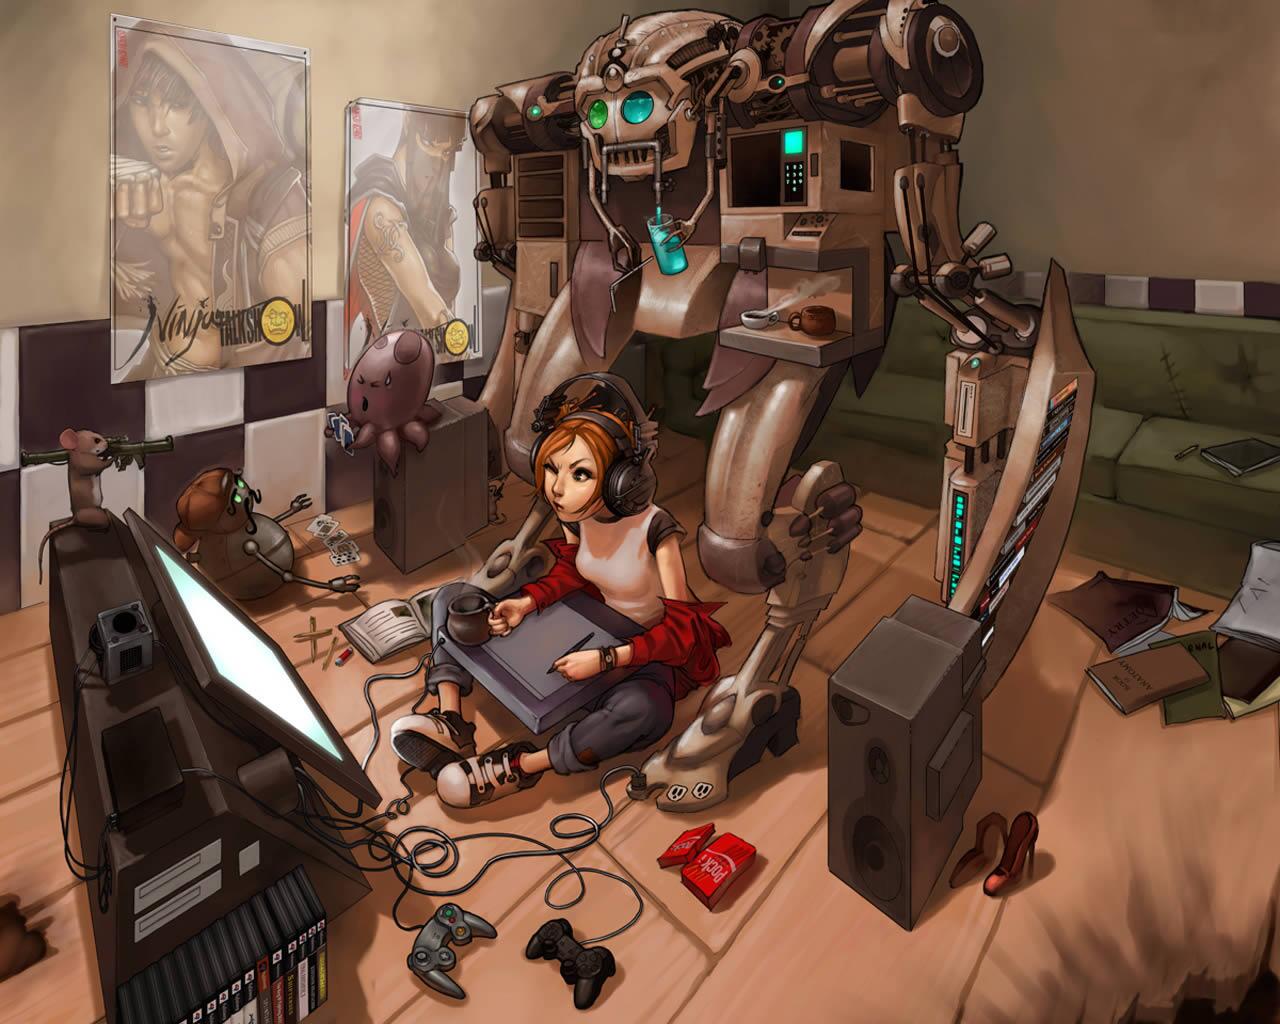 無人機bot A Twitter 女の子のゲーマー Devushka Gejmer ロシアのサイトで公開されていた女の子ゲーマーのイラスト 女の子の側にはロボットやゲーム機のコントローラなどが散らばっている ペンタブで絵を描いてるように思える Http T Co Ayvetth6y7 Twitter